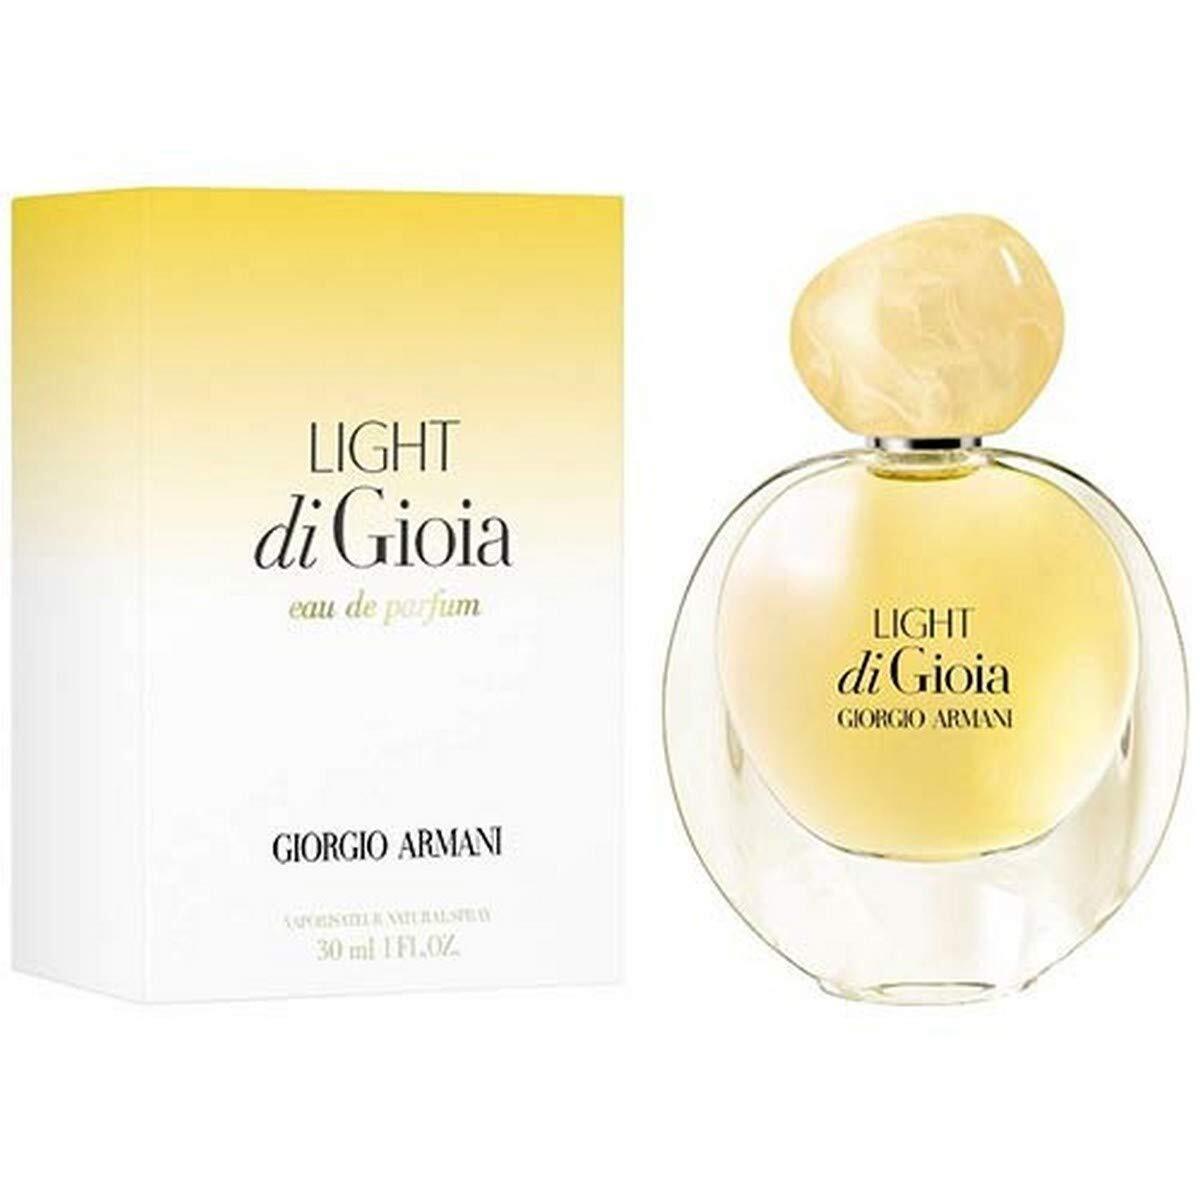 Giorgio Armani Light Di Gioia Women`s Perfume Eau De Parfum Spray 1 fl.oz./30mL